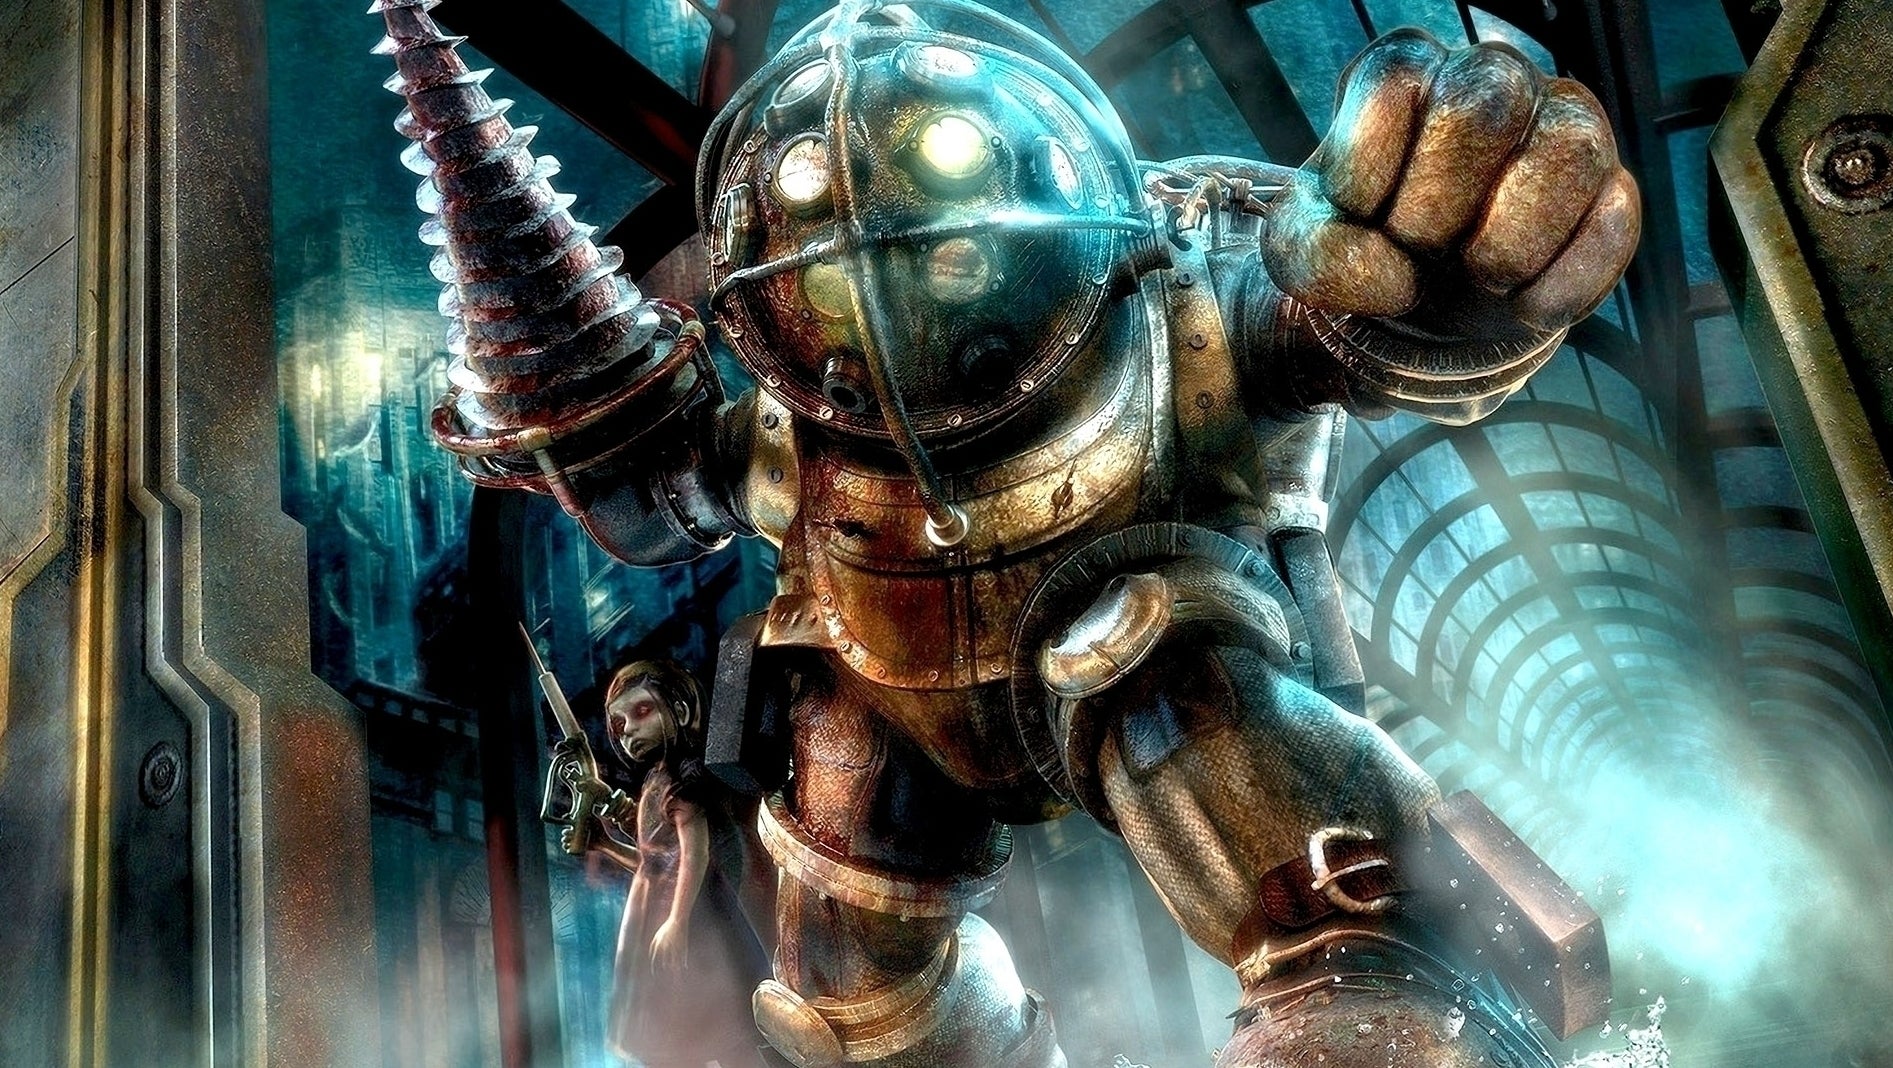 Immagine di BioShock 4 in uscita nel 2022 ora sembra molto più credibile!